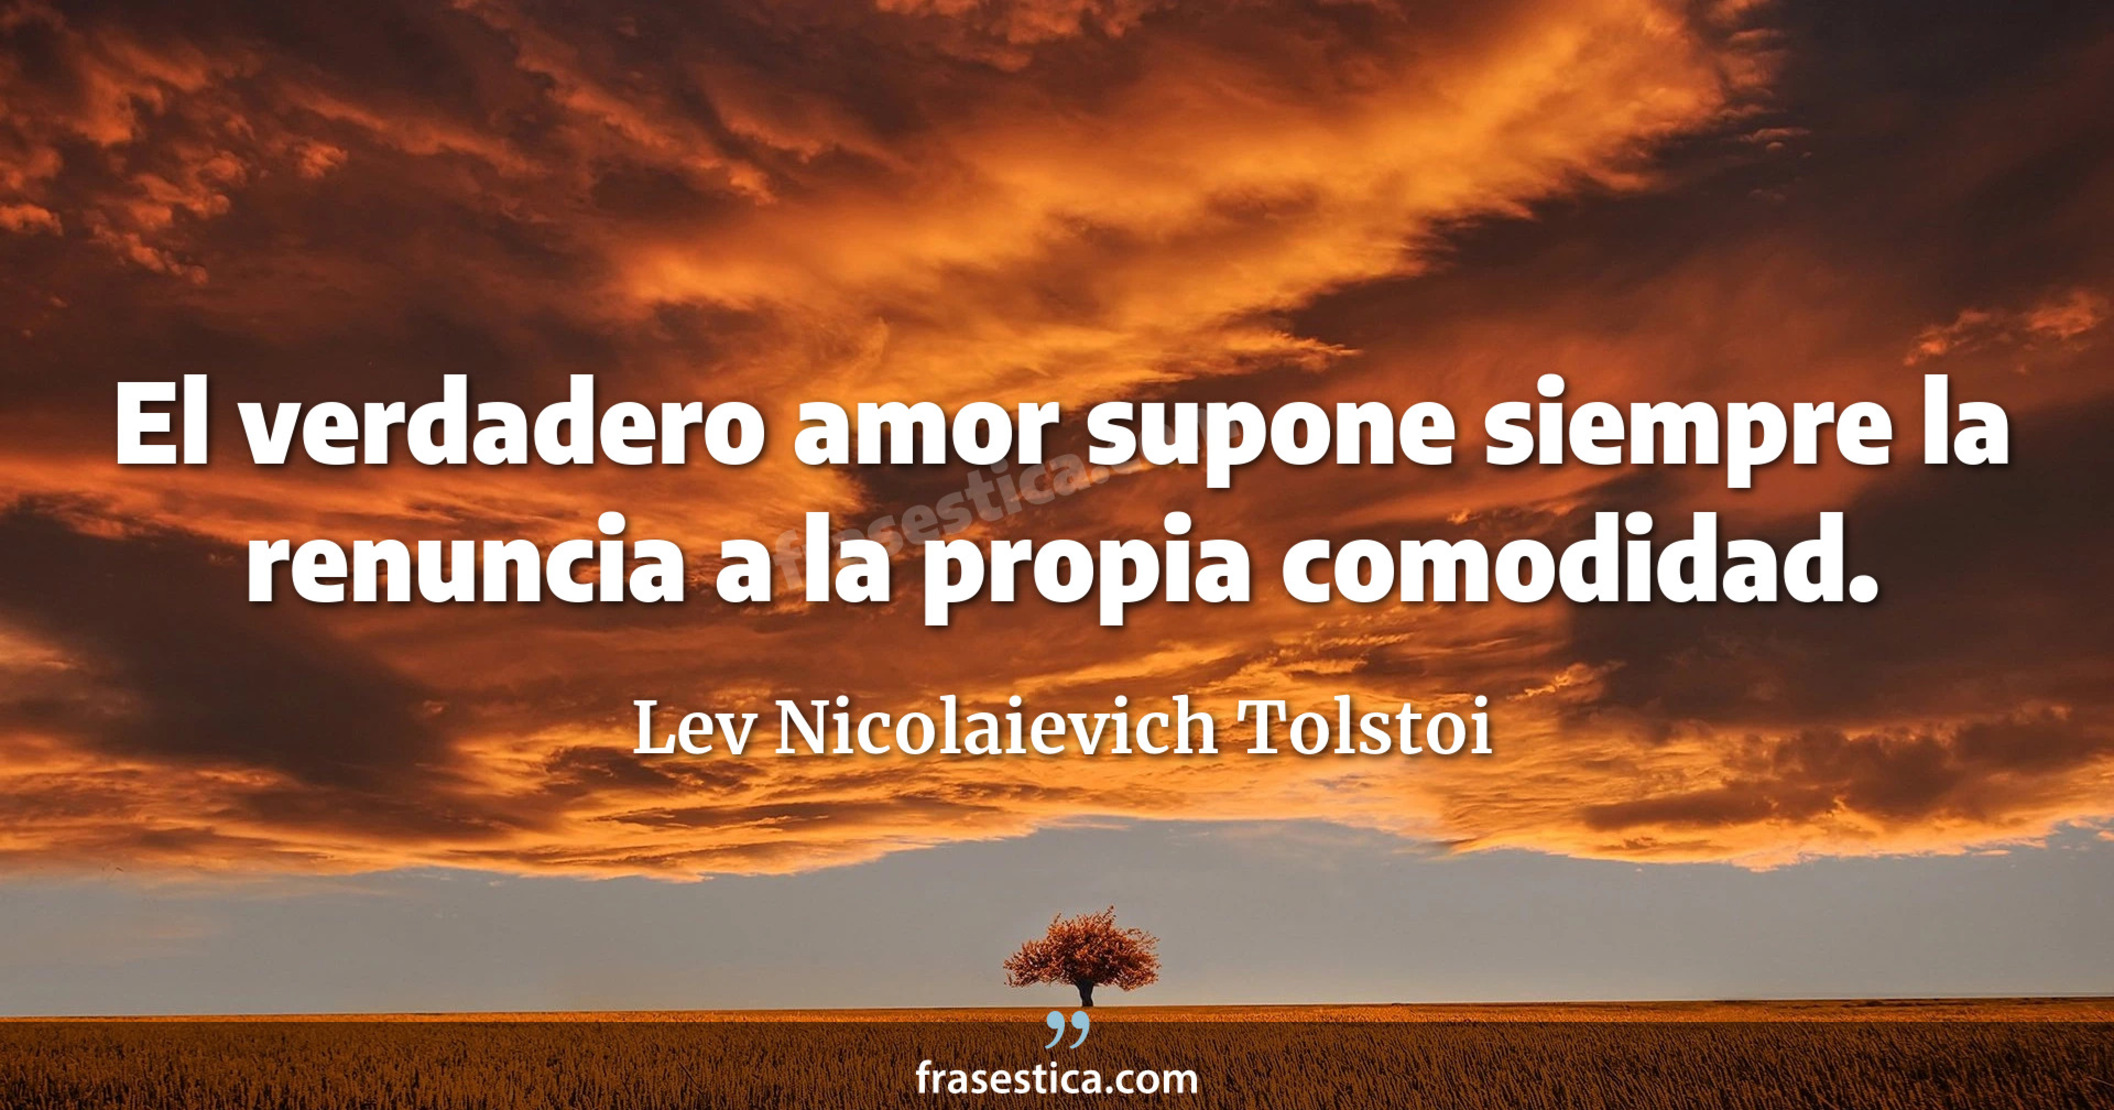 El verdadero amor supone siempre la renuncia a la propia comodidad. - Lev Nicolaievich Tolstoi